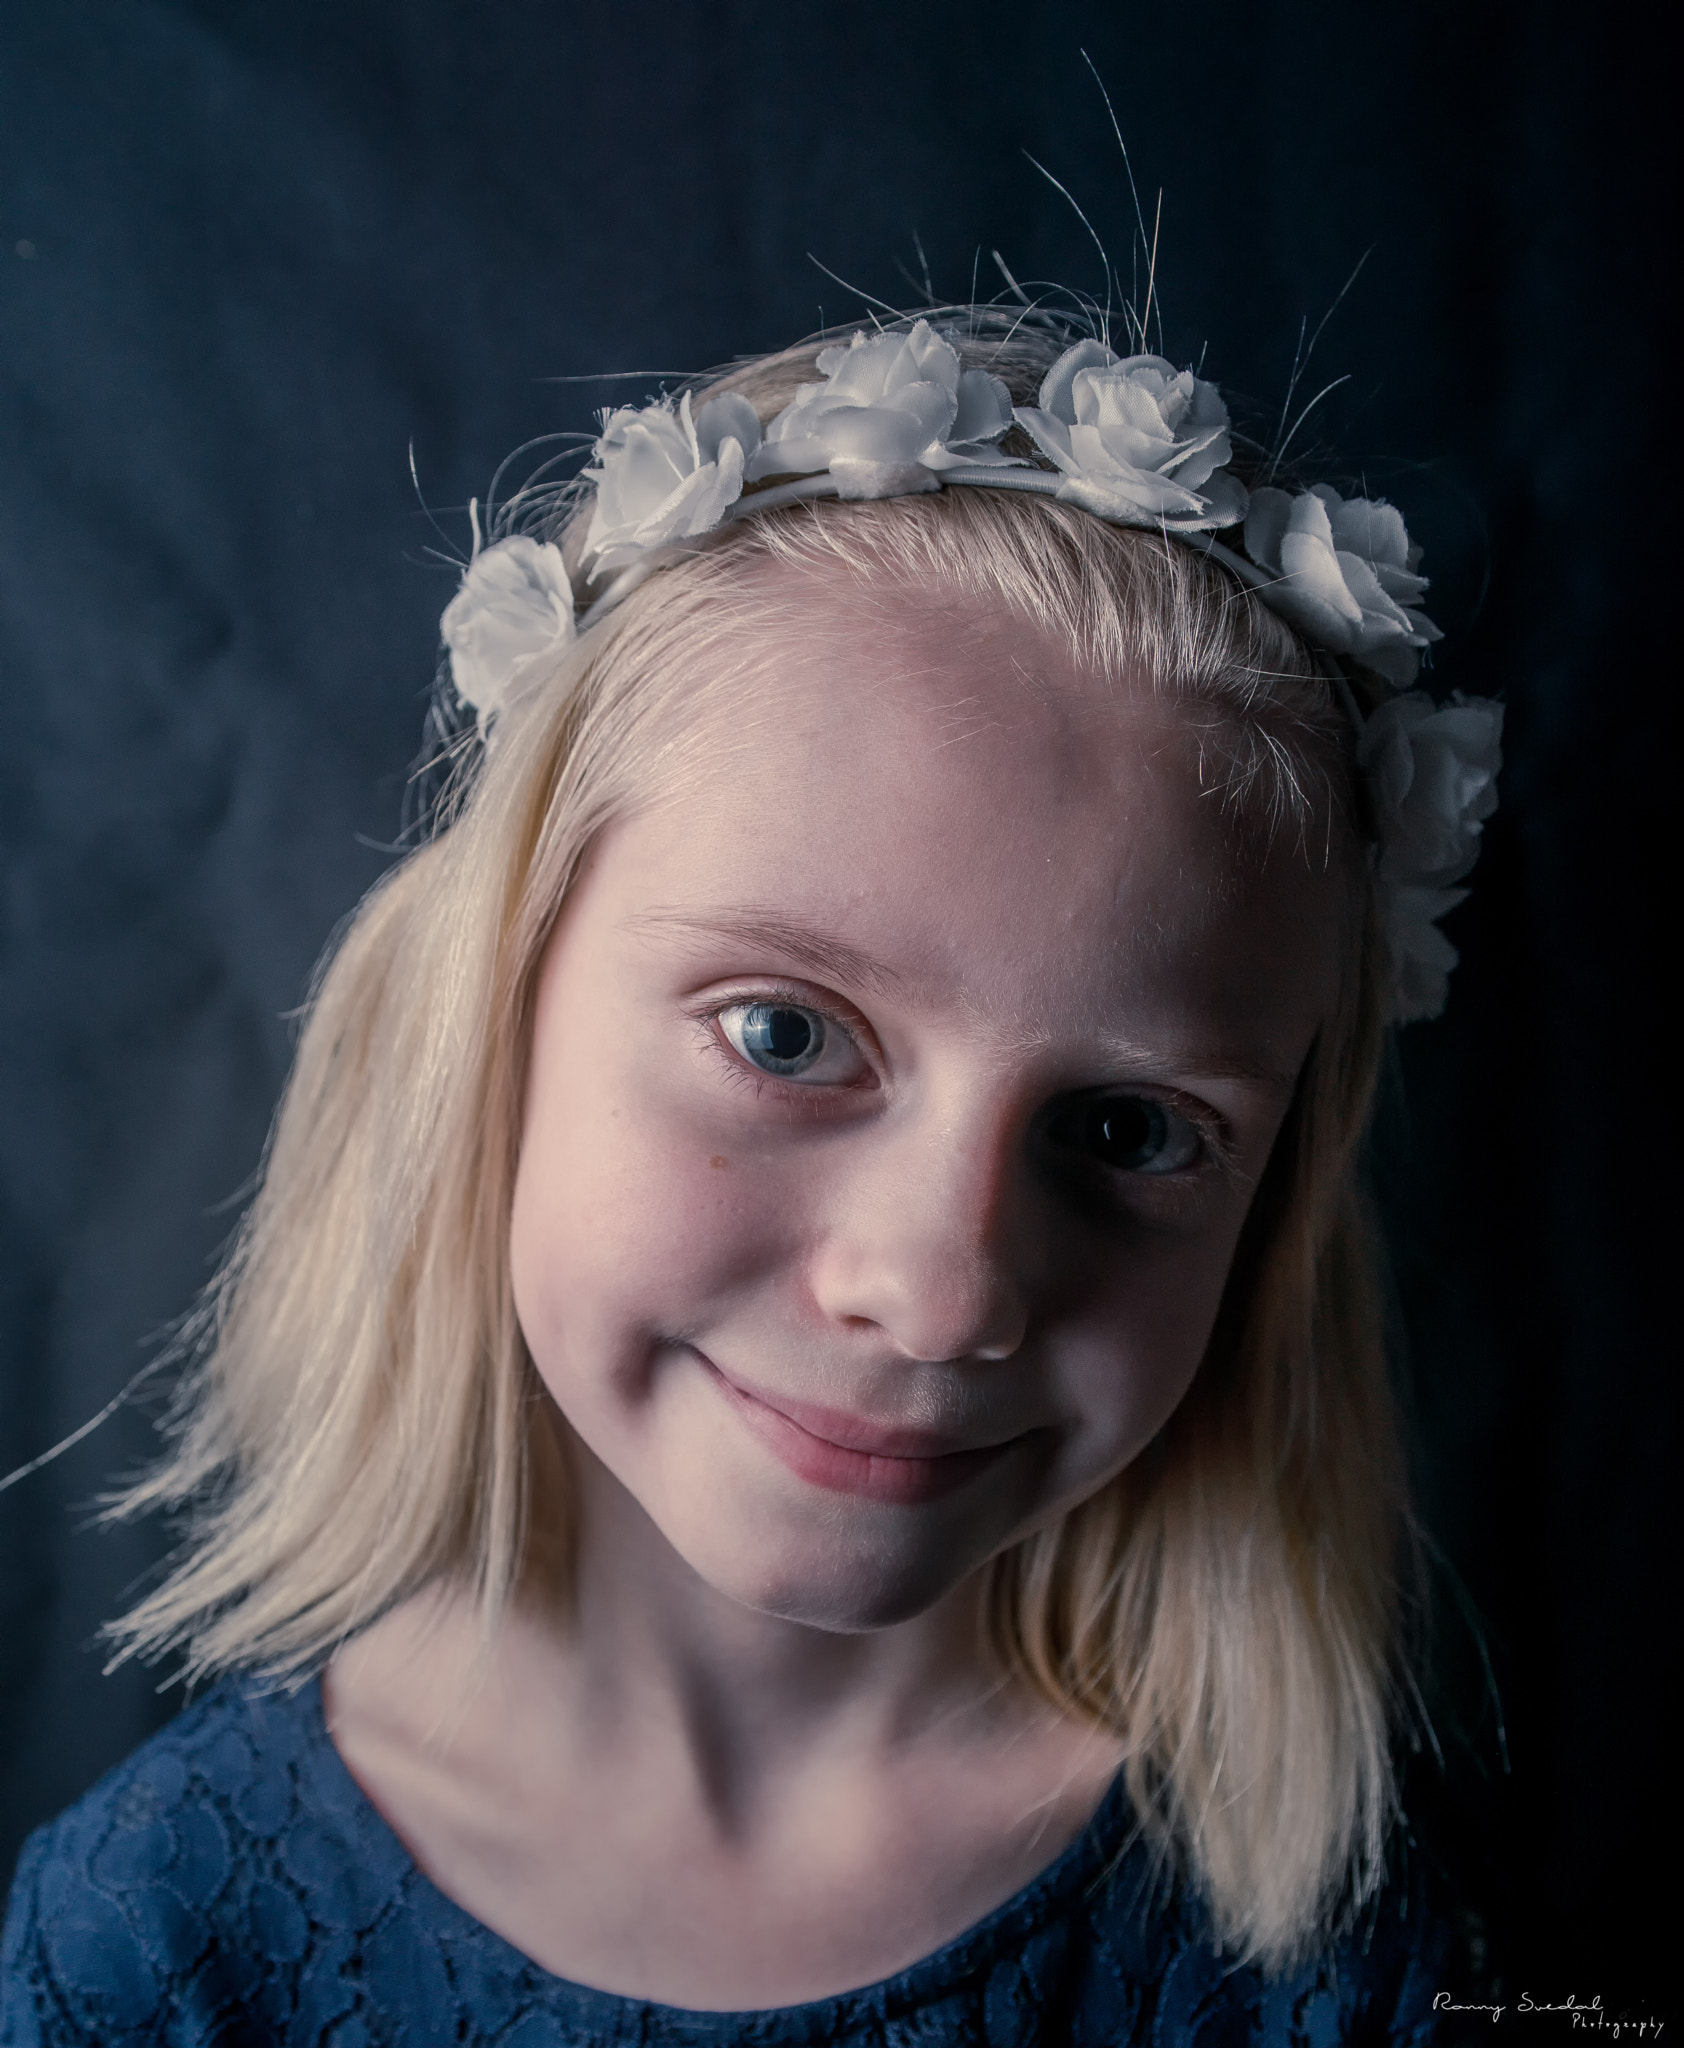 Nikon D800 sample photo. Daughter color portrait photography